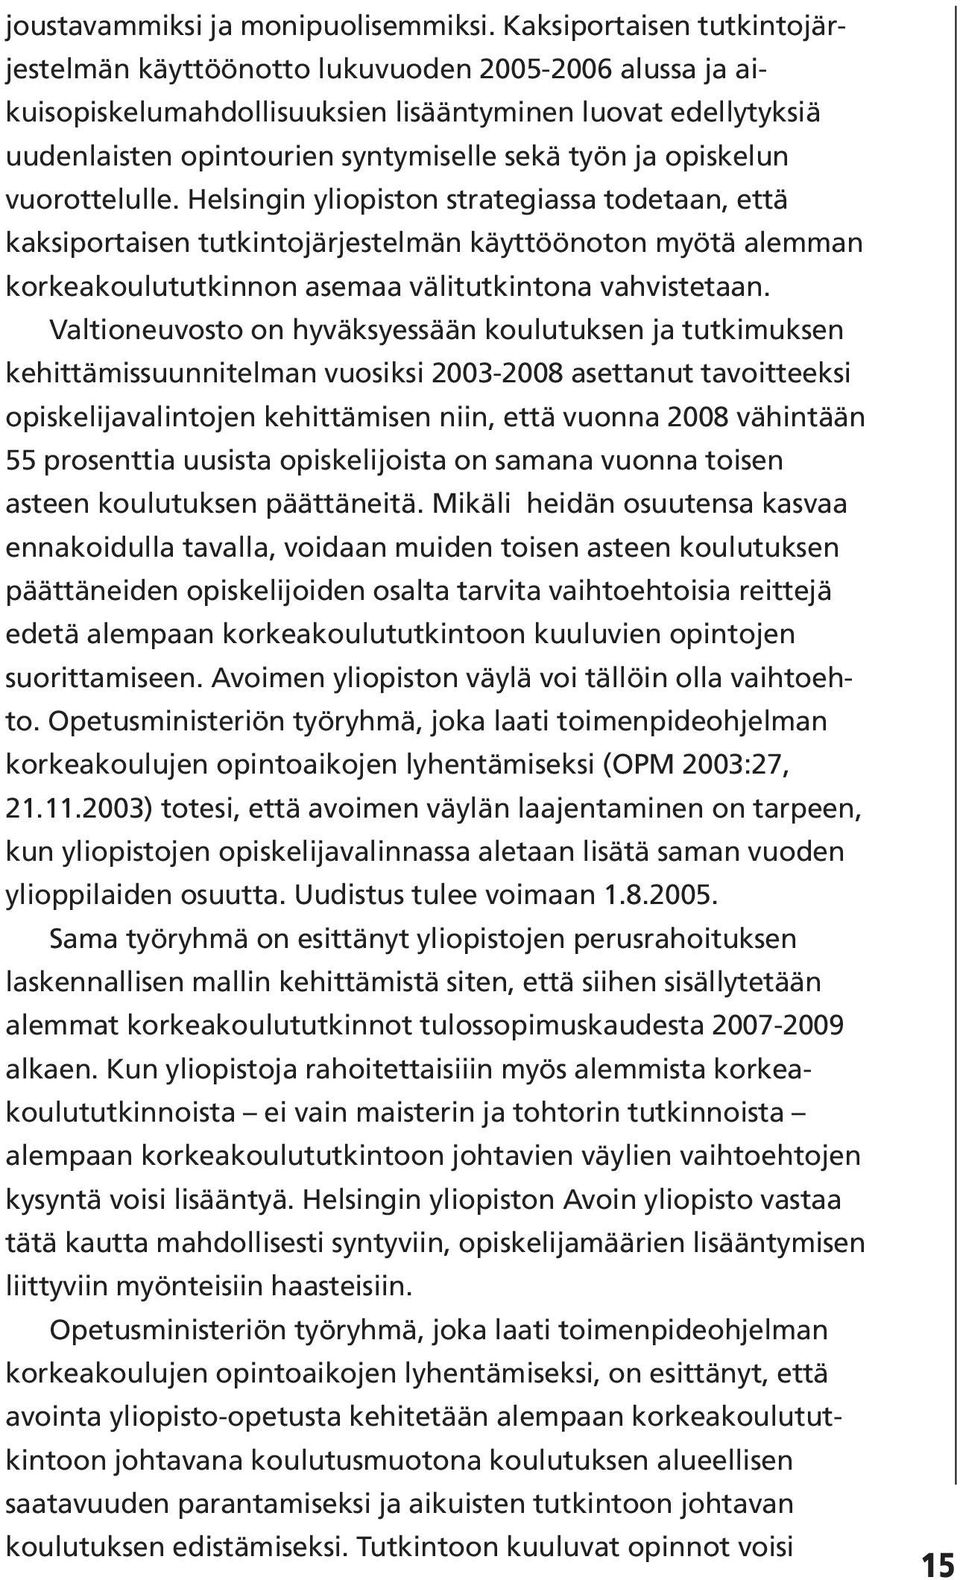 opiskelun vuorottelulle. Helsingin yliopiston strategiassa todetaan, että kaksiportaisen tutkintojärjestelmän käyttöönoton myötä alemman korkeakoulututkinnon asemaa välitutkintona vahvistetaan.